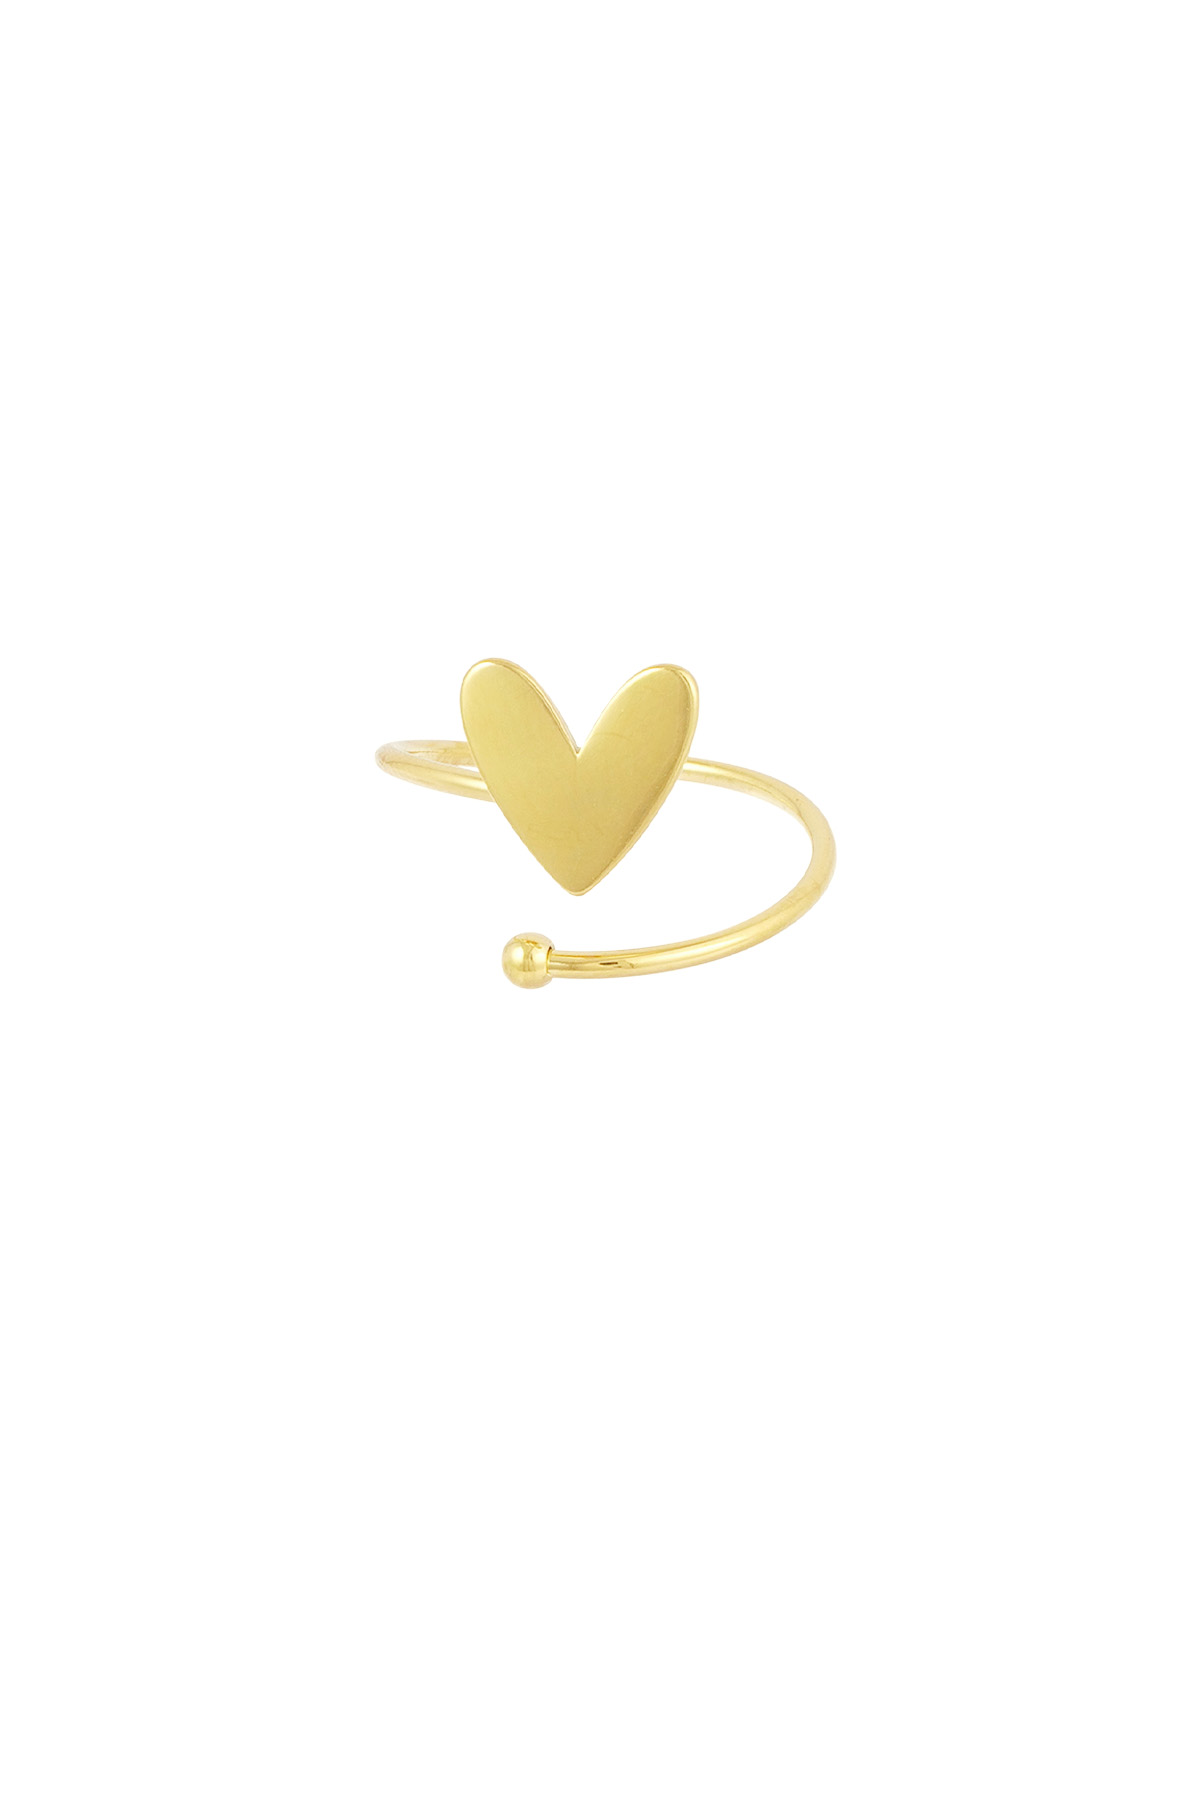 Bükülmüş aşk yüzüğü - altın 